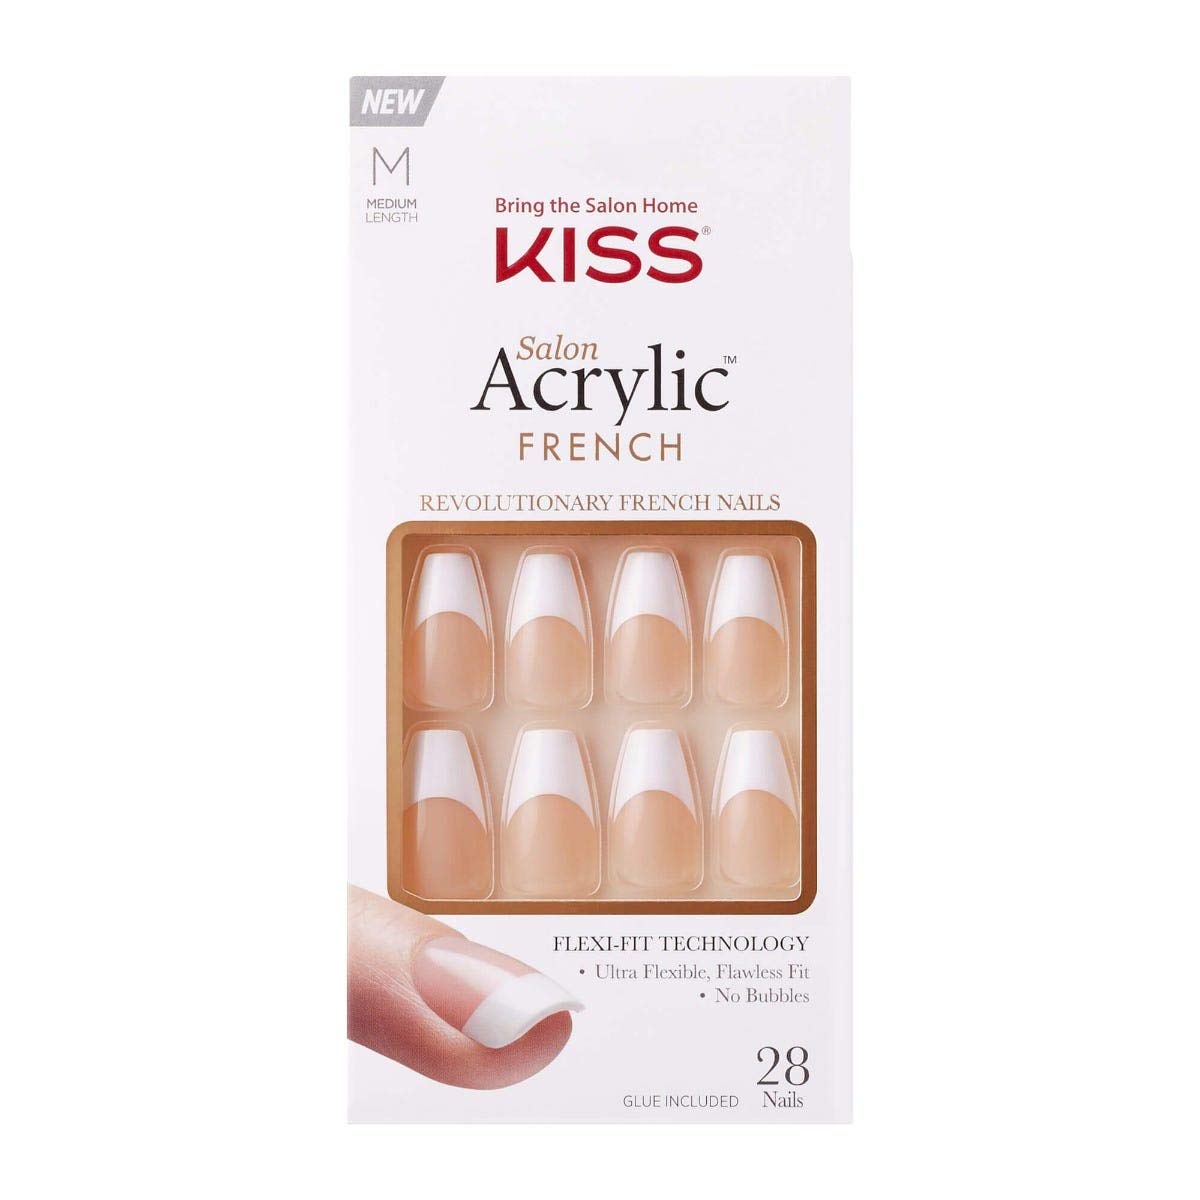 KISS Salon Acrylic French Nail Manicure Set